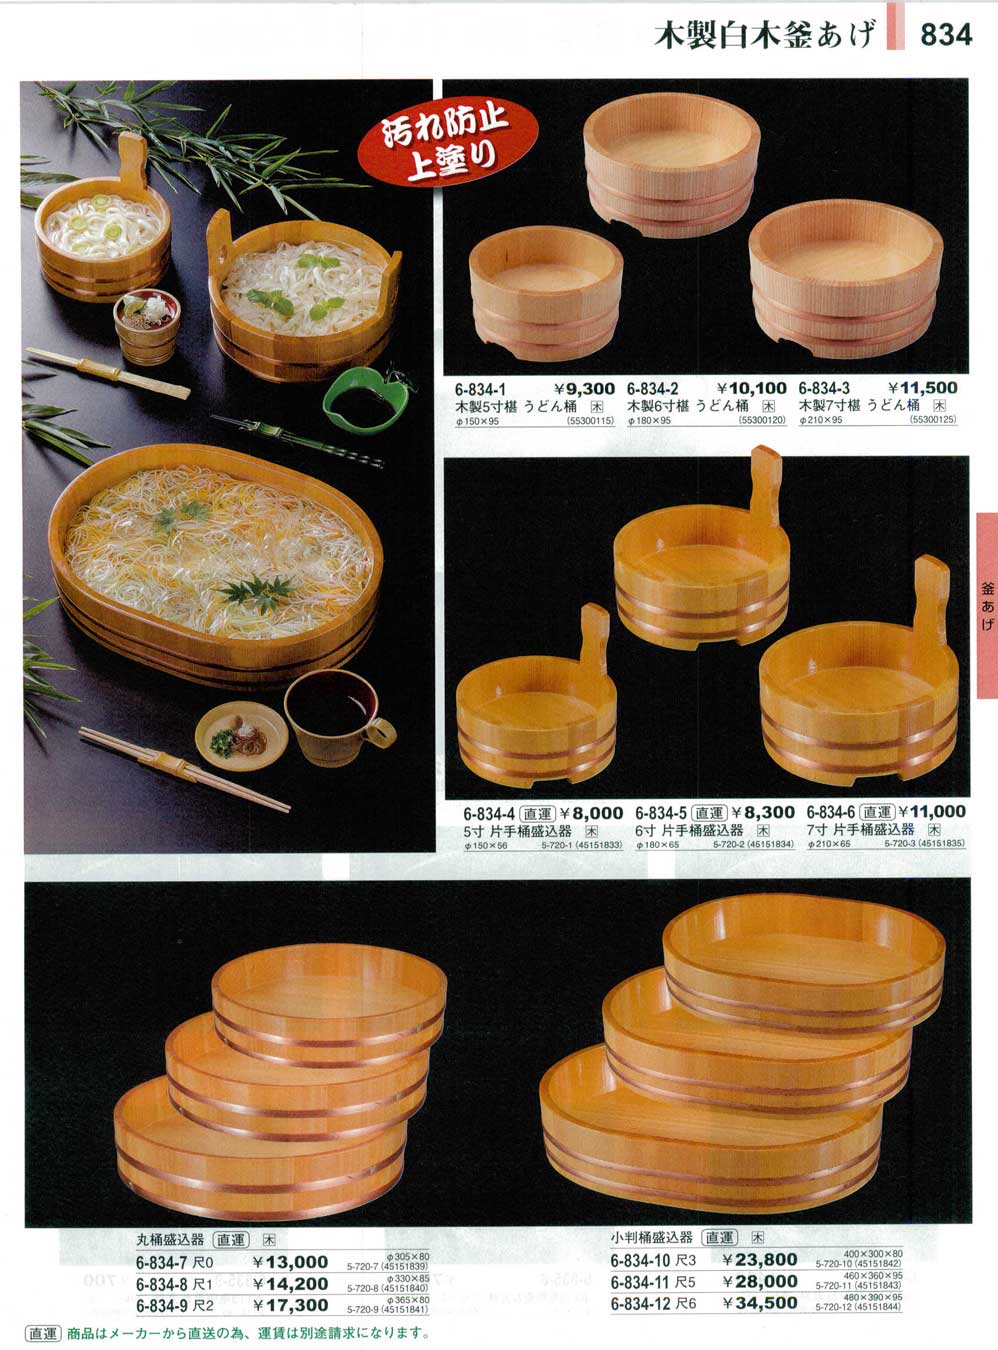 木製 片手桶 銅タガ 6寸 18㎝ 盛器 木曽製 うどん・ソーメン桶に